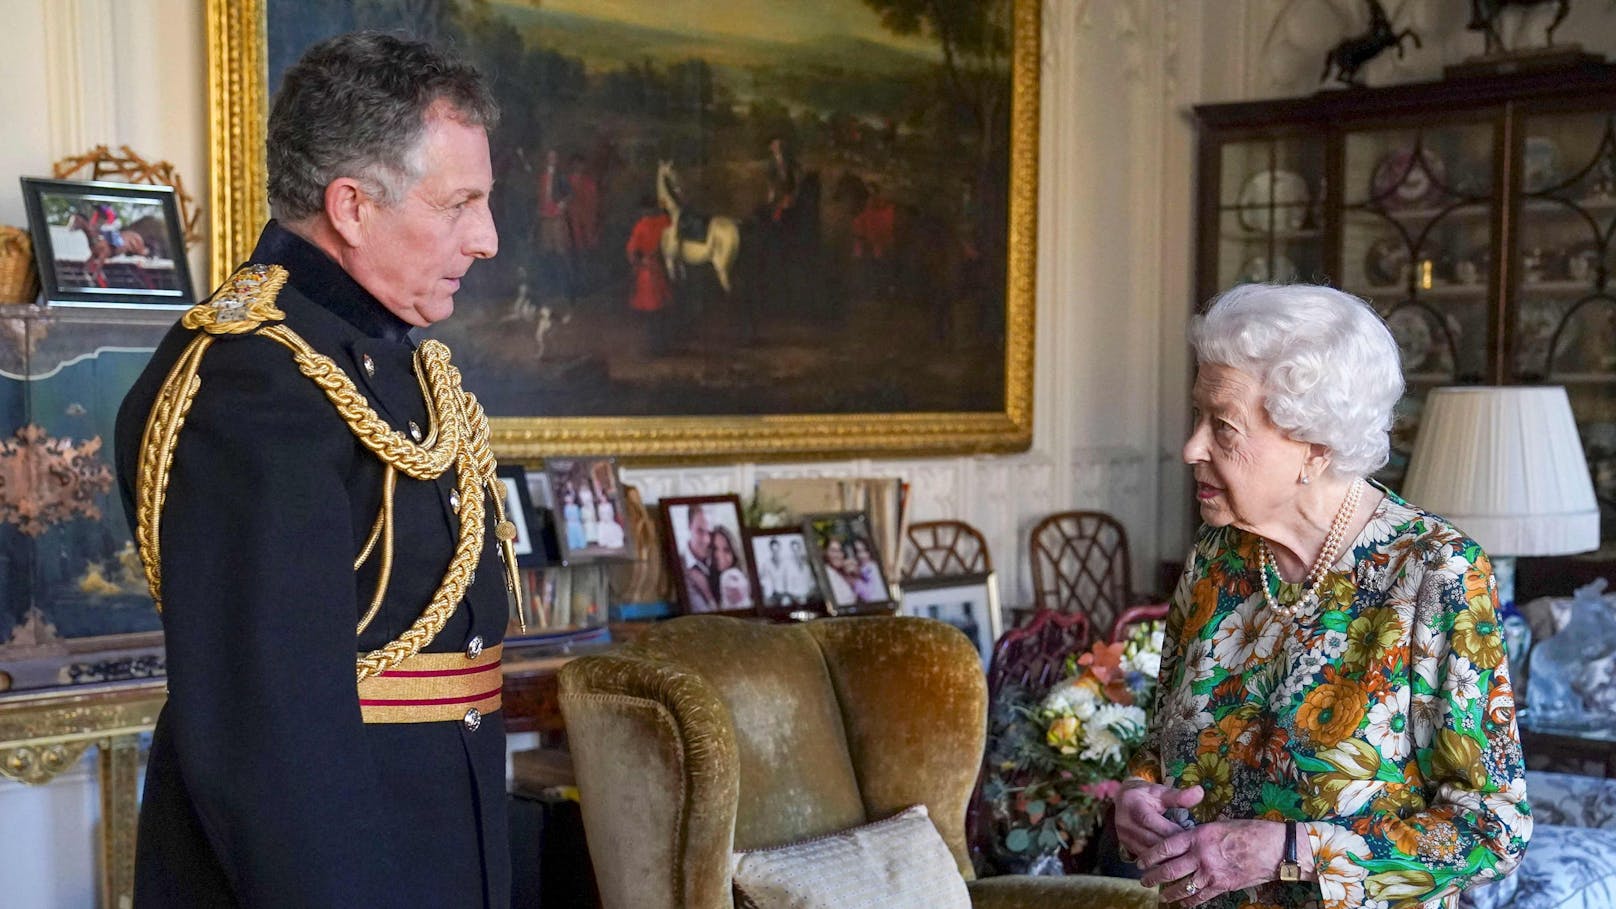 Vor wenigen Tagen empfing die Queen den scheidenden Generalstabschef Nick Carter zu einer persönlichen Audienz auf Schloss Windsor.